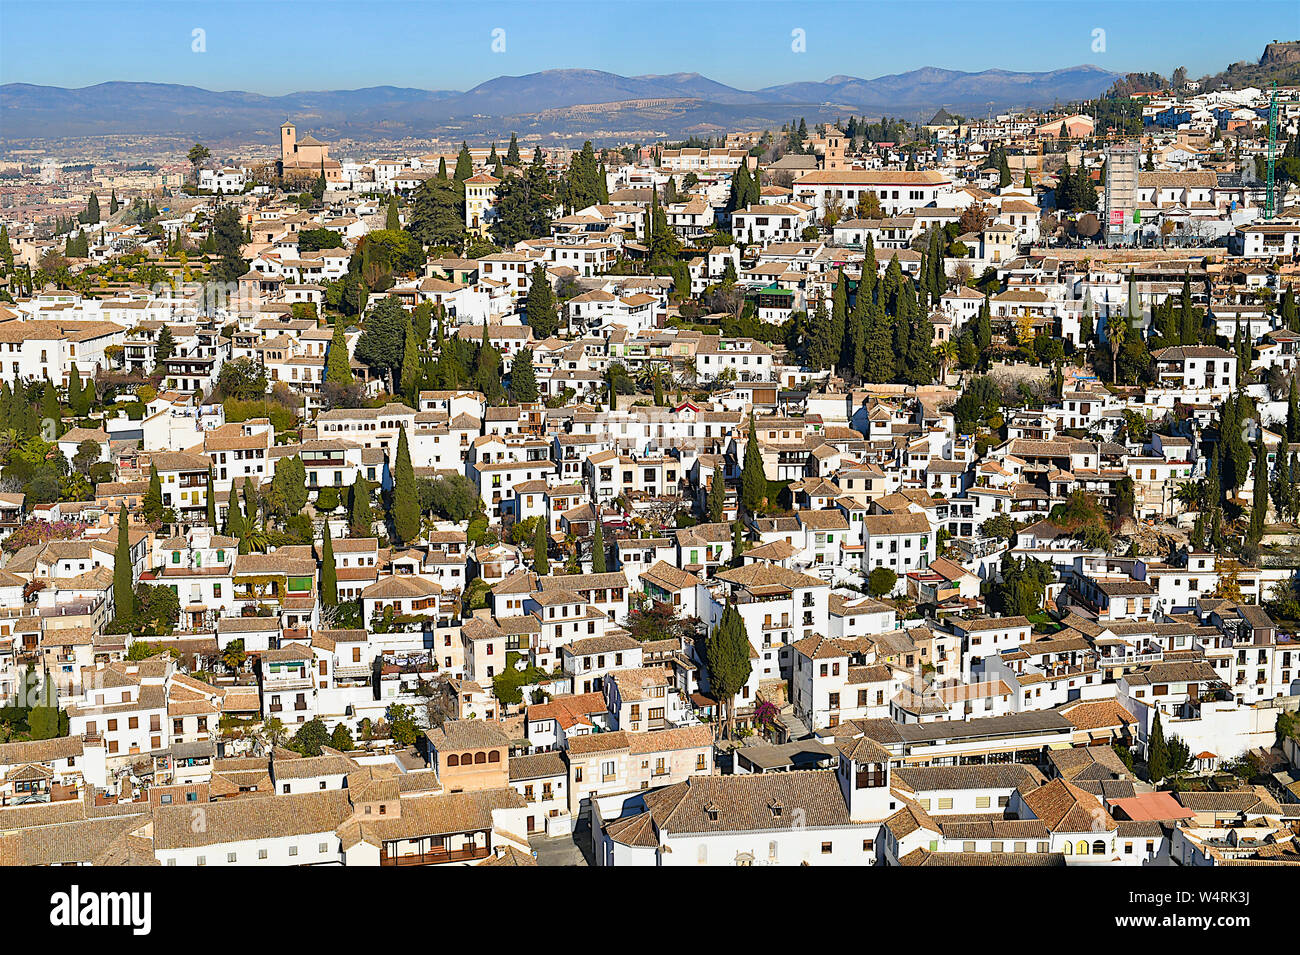 Albaicin district, Granada, Andalusia, Spain Stock Photo